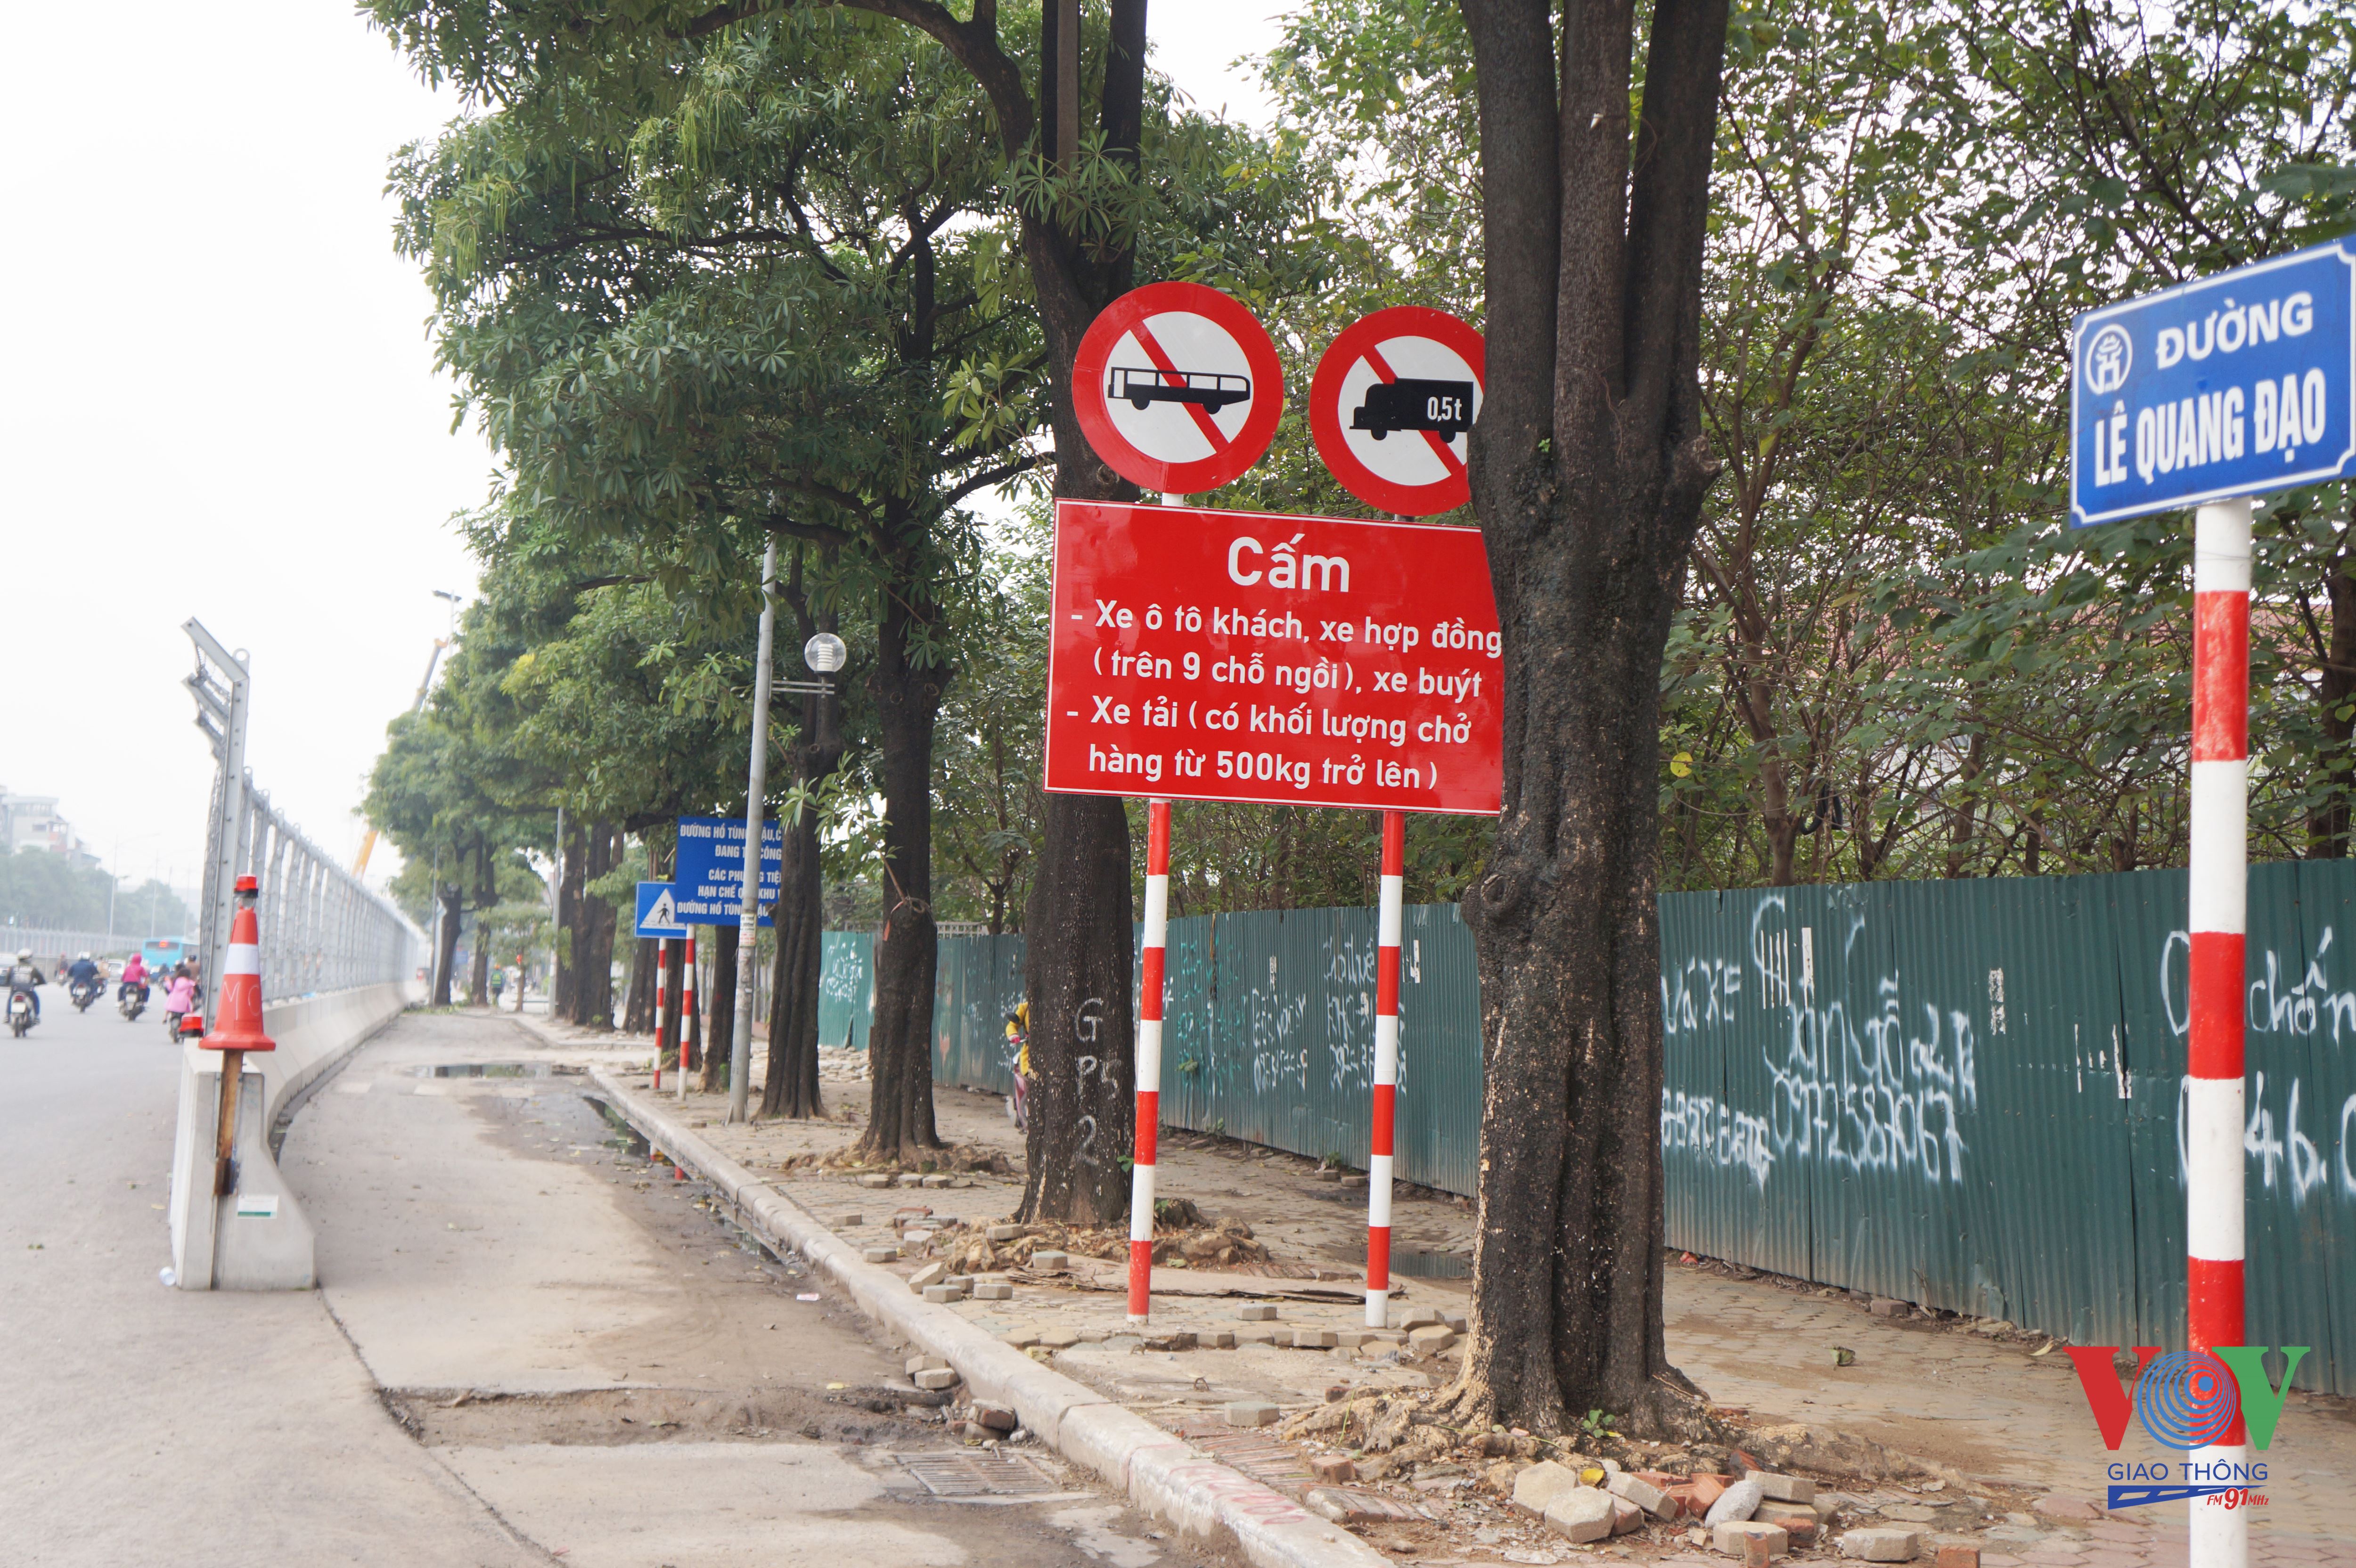 Cũng trong ngày 10/2, Sở Giao thông Vận tải Hà Nội cắm biển cấm các loại phương tiện ở đầu các tuyến đường Lê Quang Đạo, Lê Đức Thọ (quận Nam Từ Liêm); thời gian cấm dự kiến đến hết ngày 26/3.